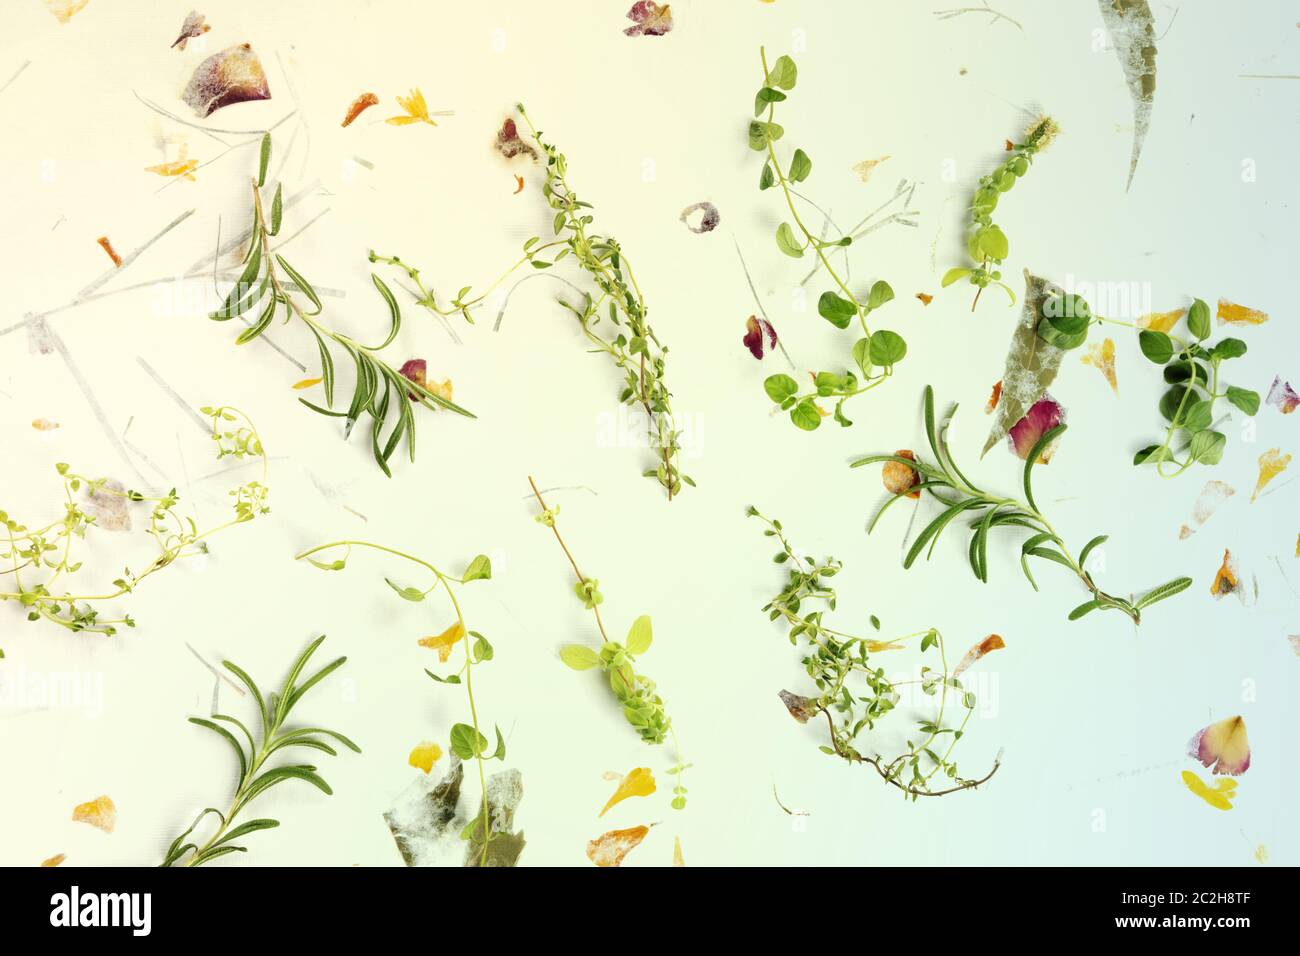 Le erbe della Provenza. Rosmarino, origano, timo e maggiorana, sparati dall'alto su uno sfondo di foglie secche e petali, tonici Foto Stock